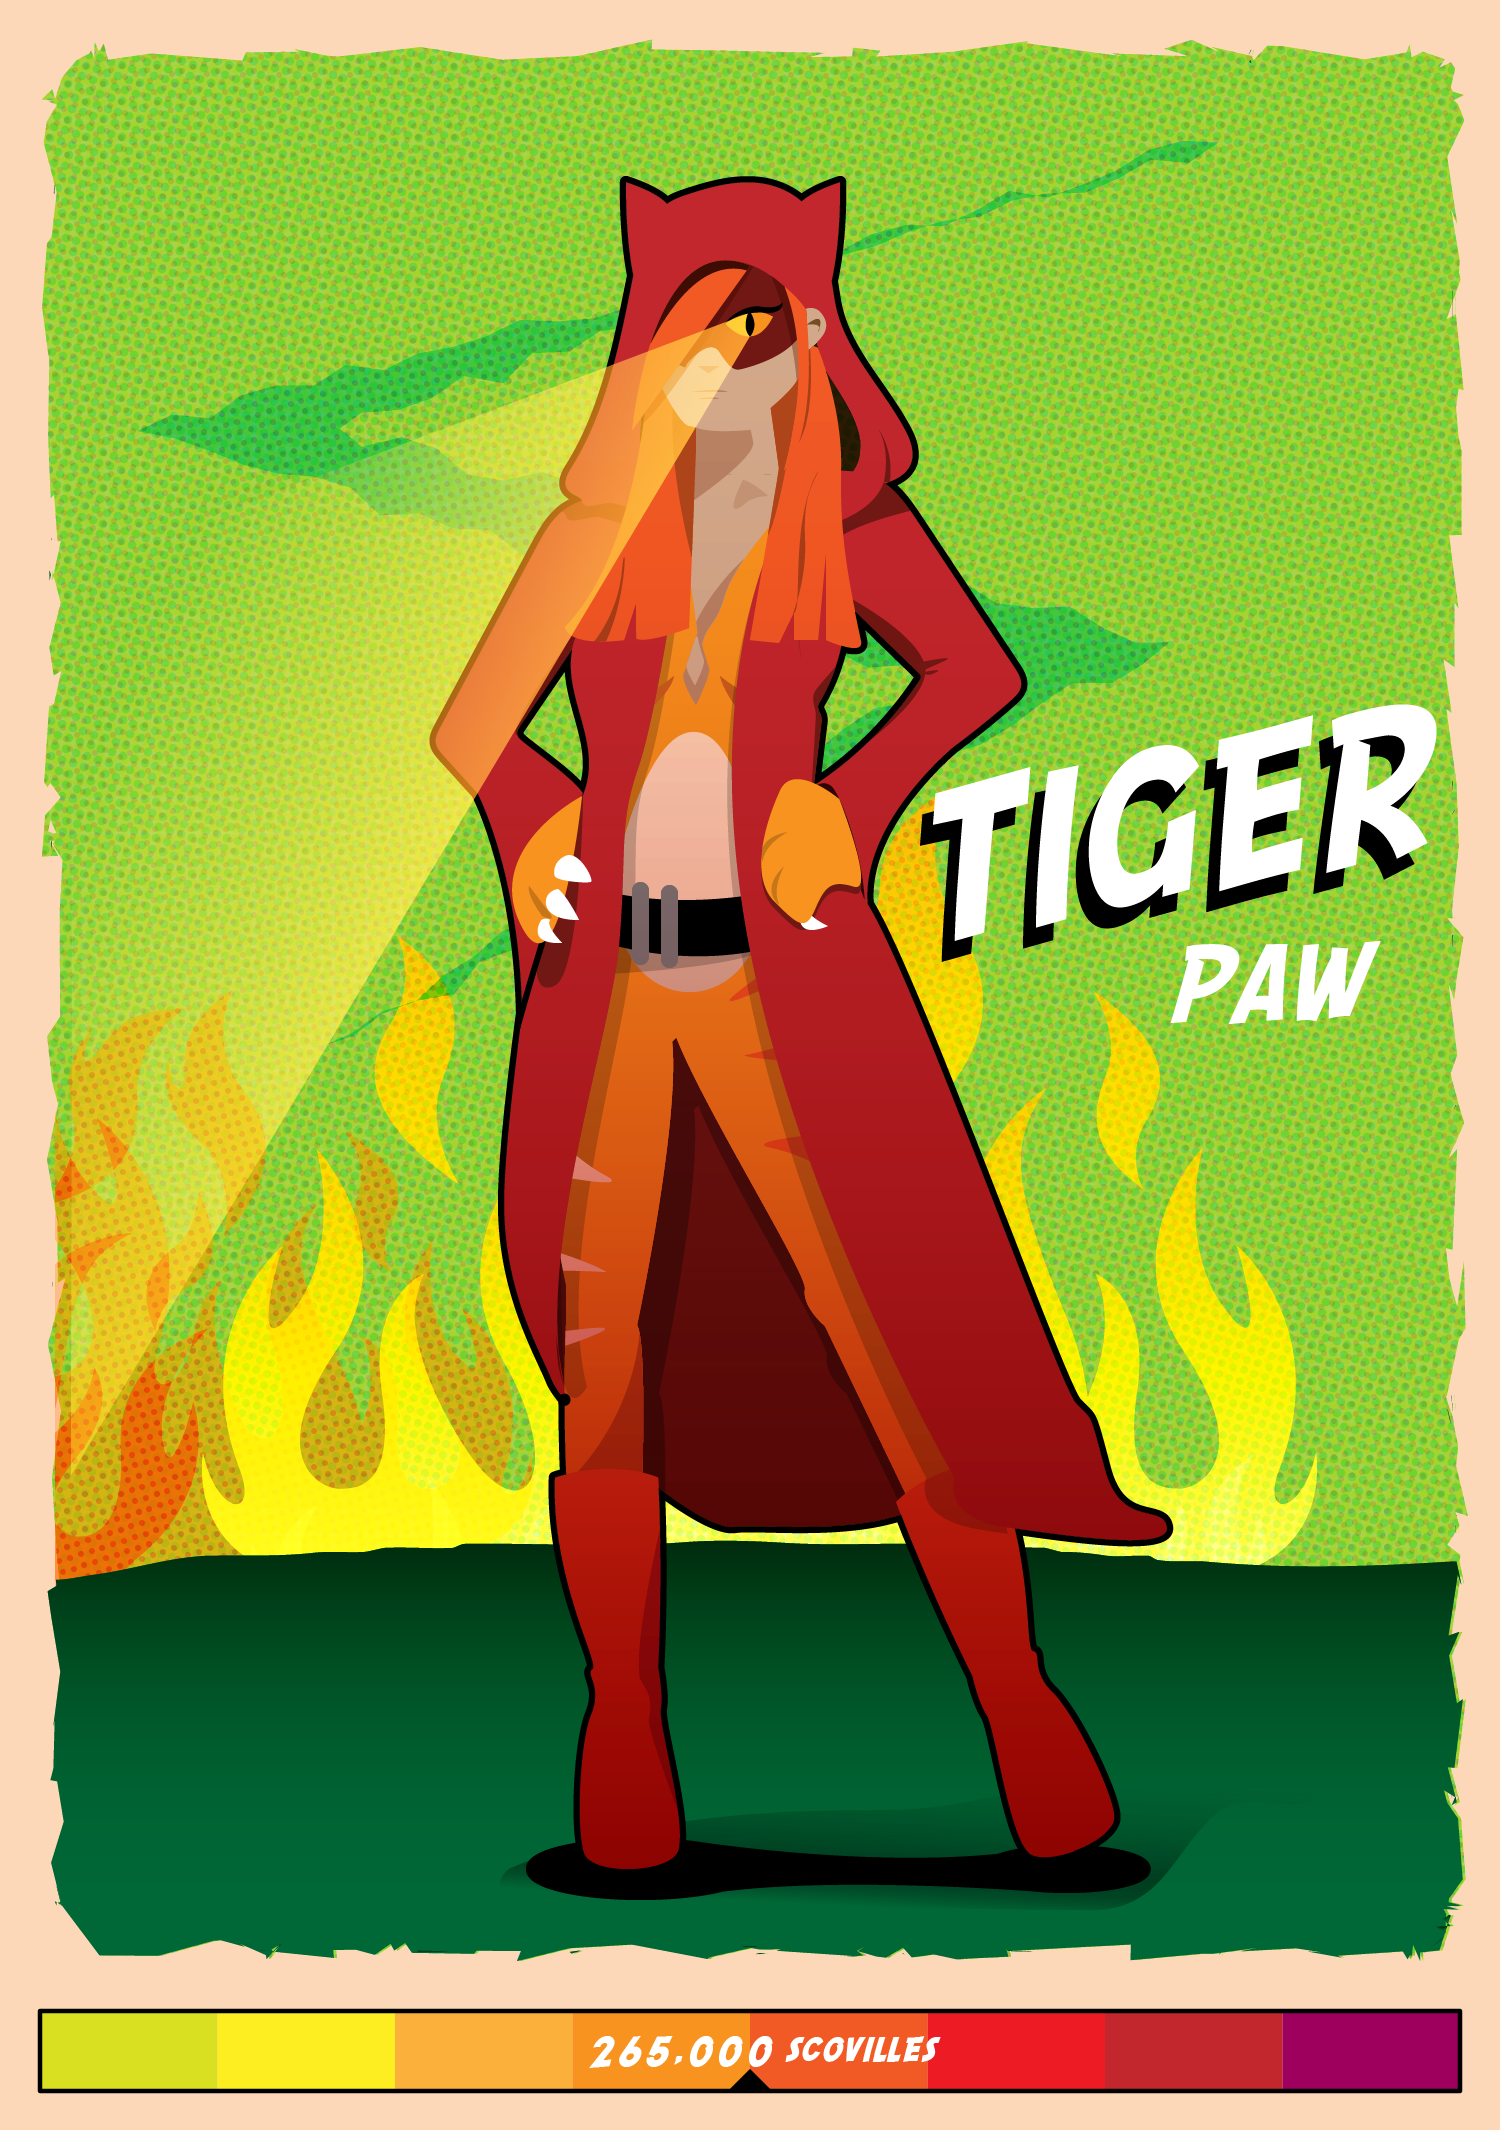 Tiger Paw (Ship It Appliances)